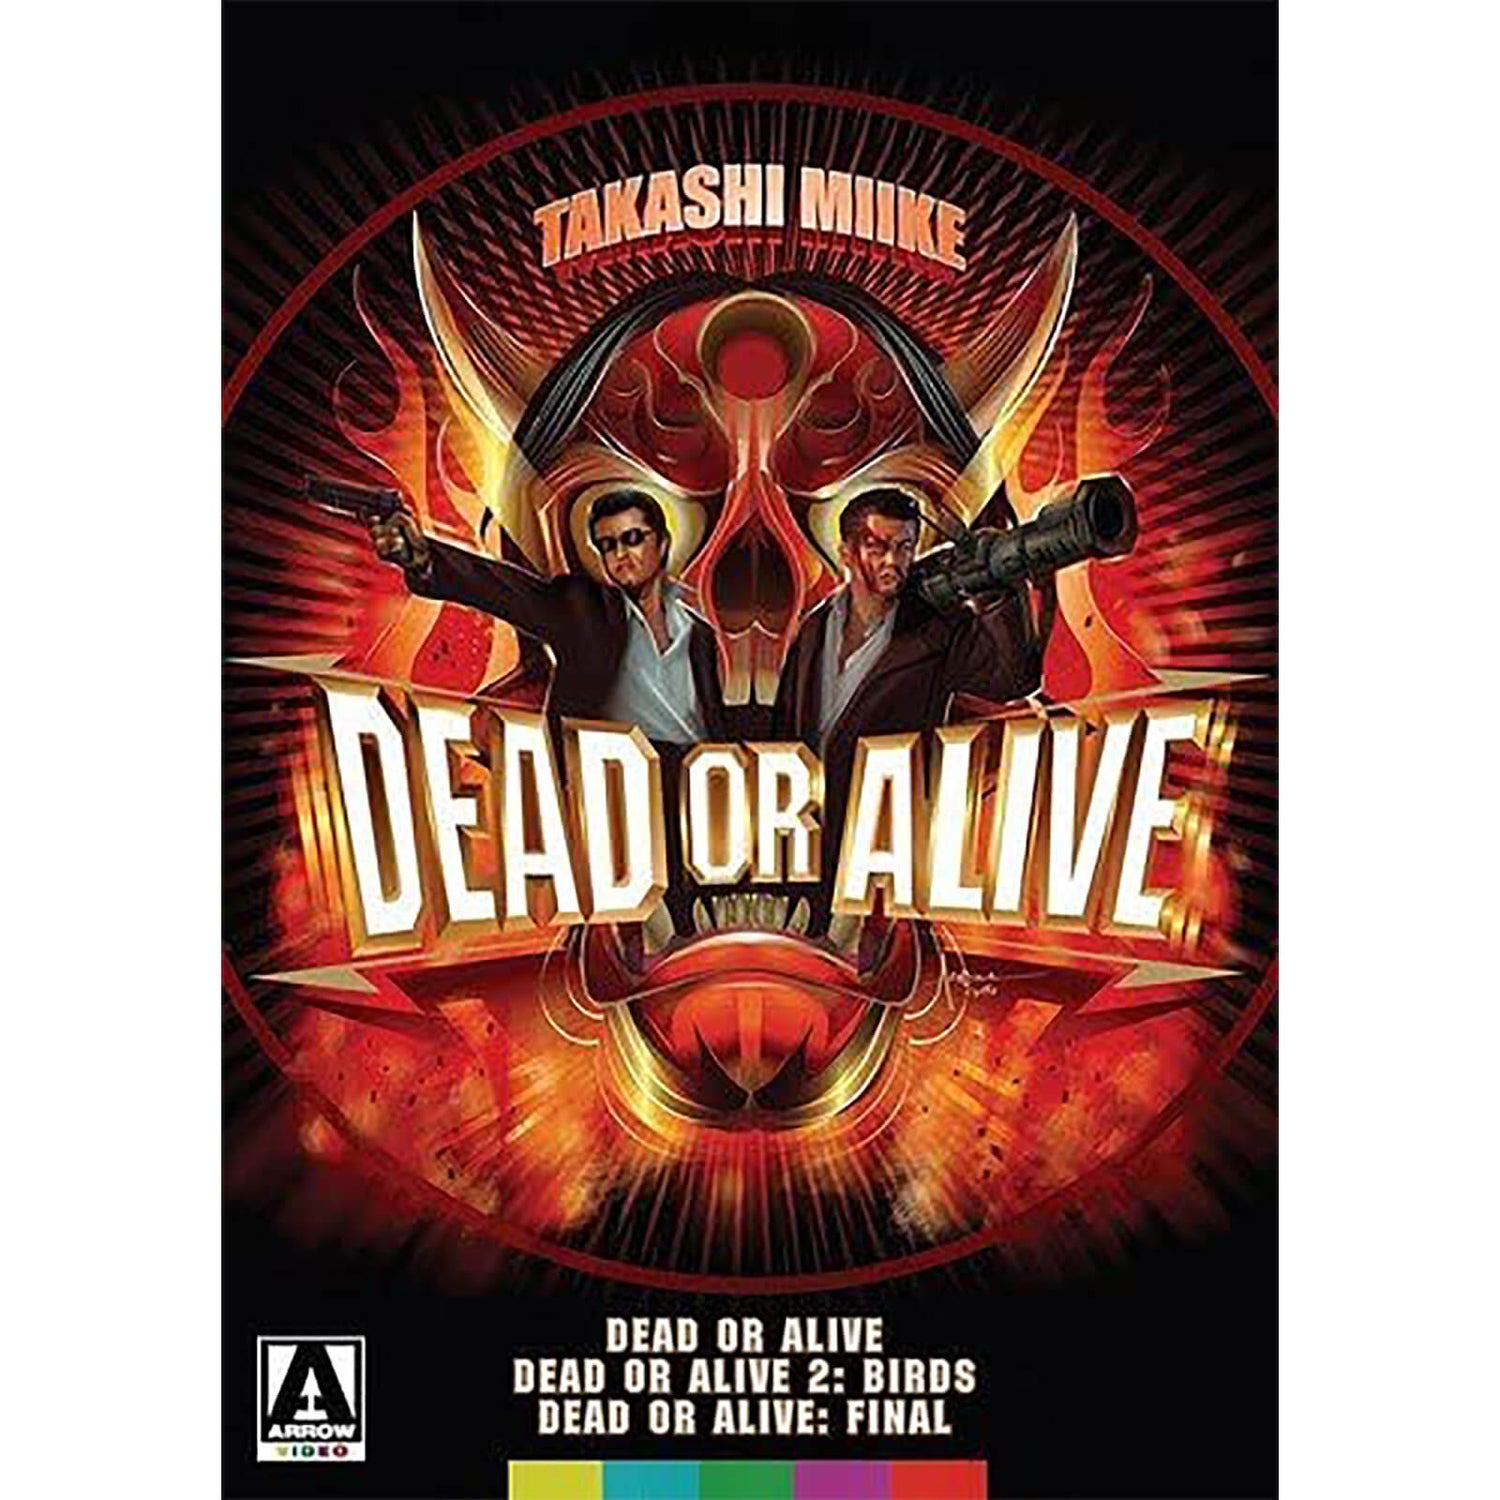 Dead Or Alive Trilogy DVD